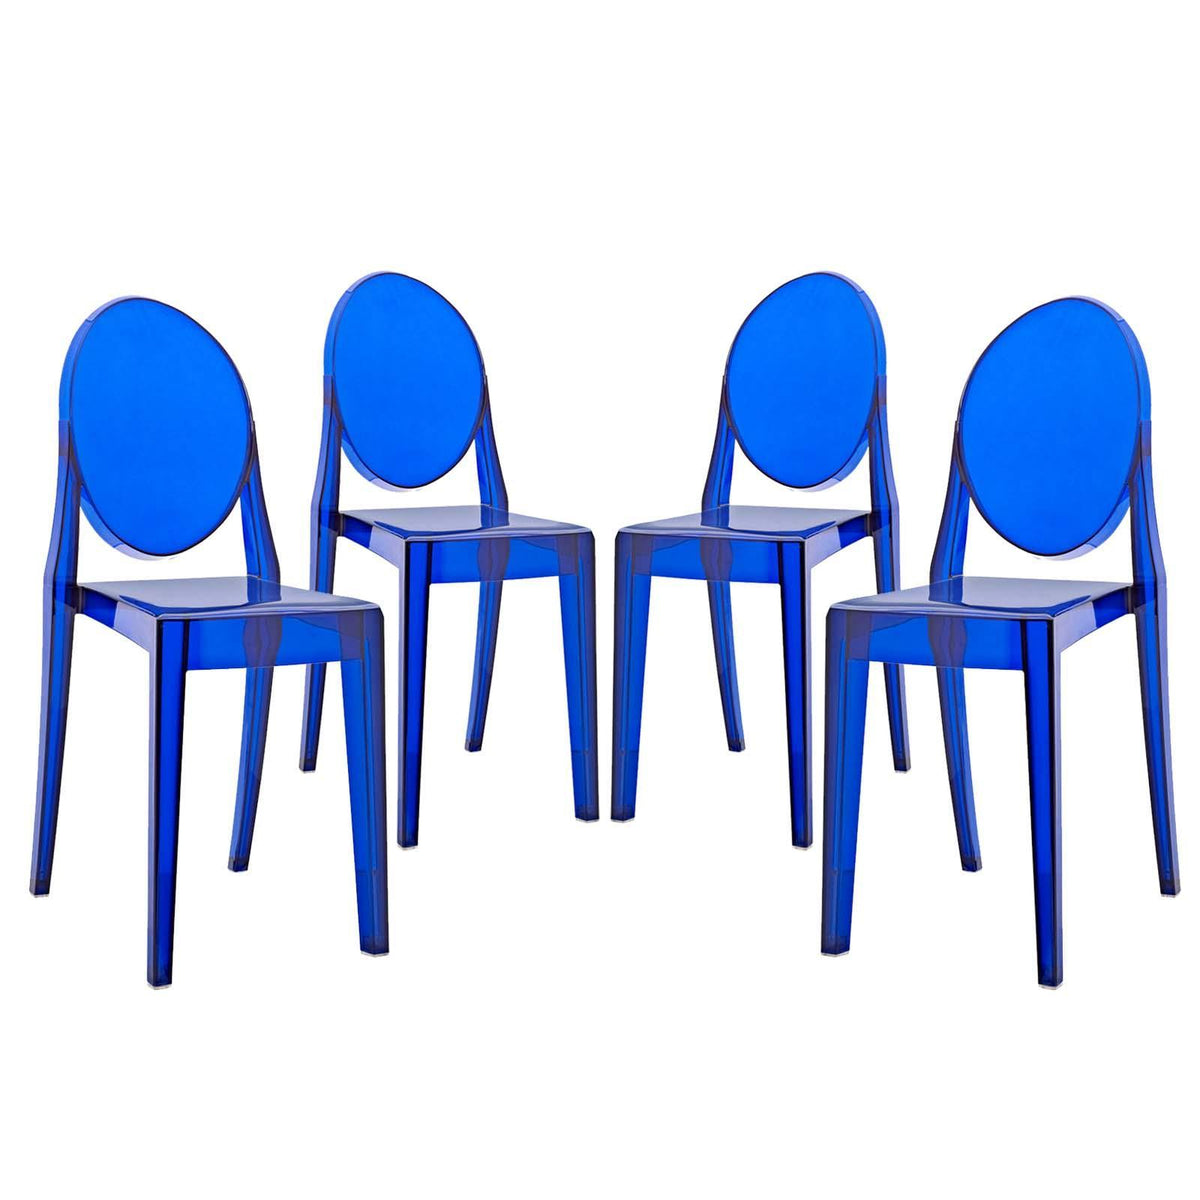 Modway Furniture Modern Casper Dining Chairs Set of 4 - EEI-908